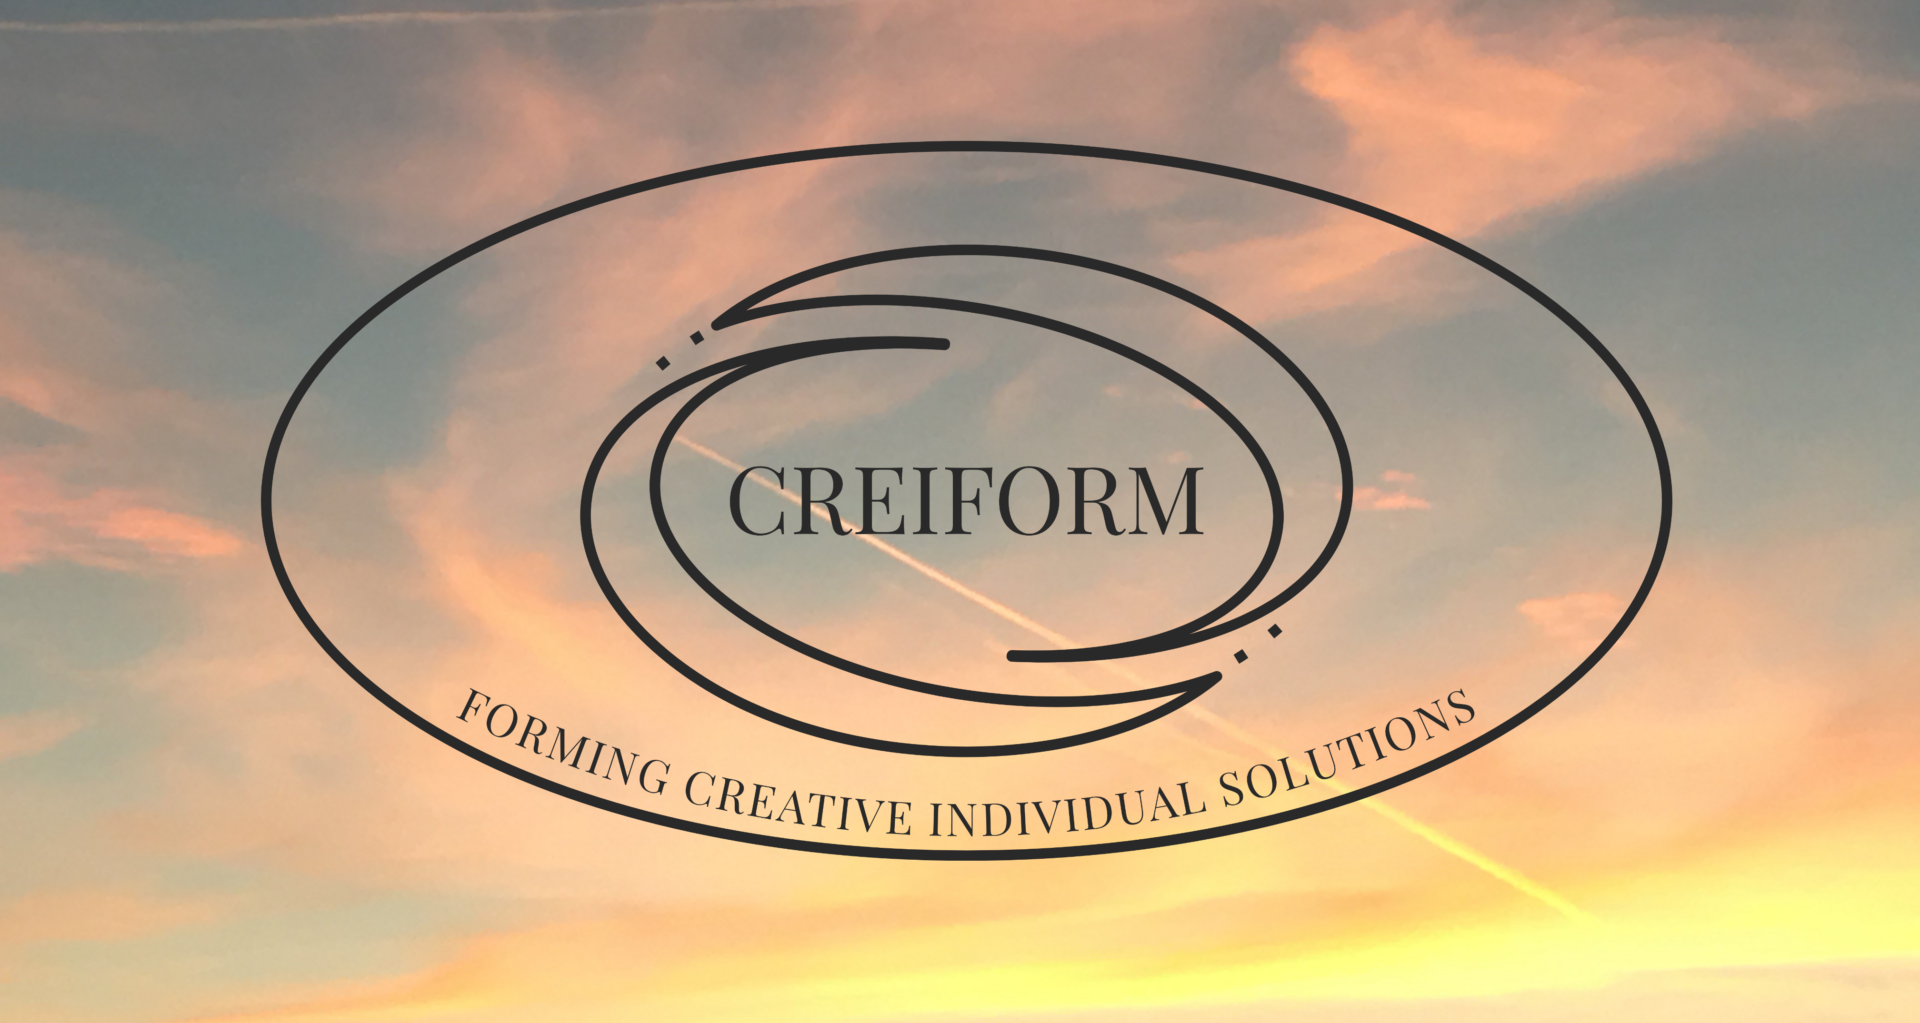 Creiform Ltd